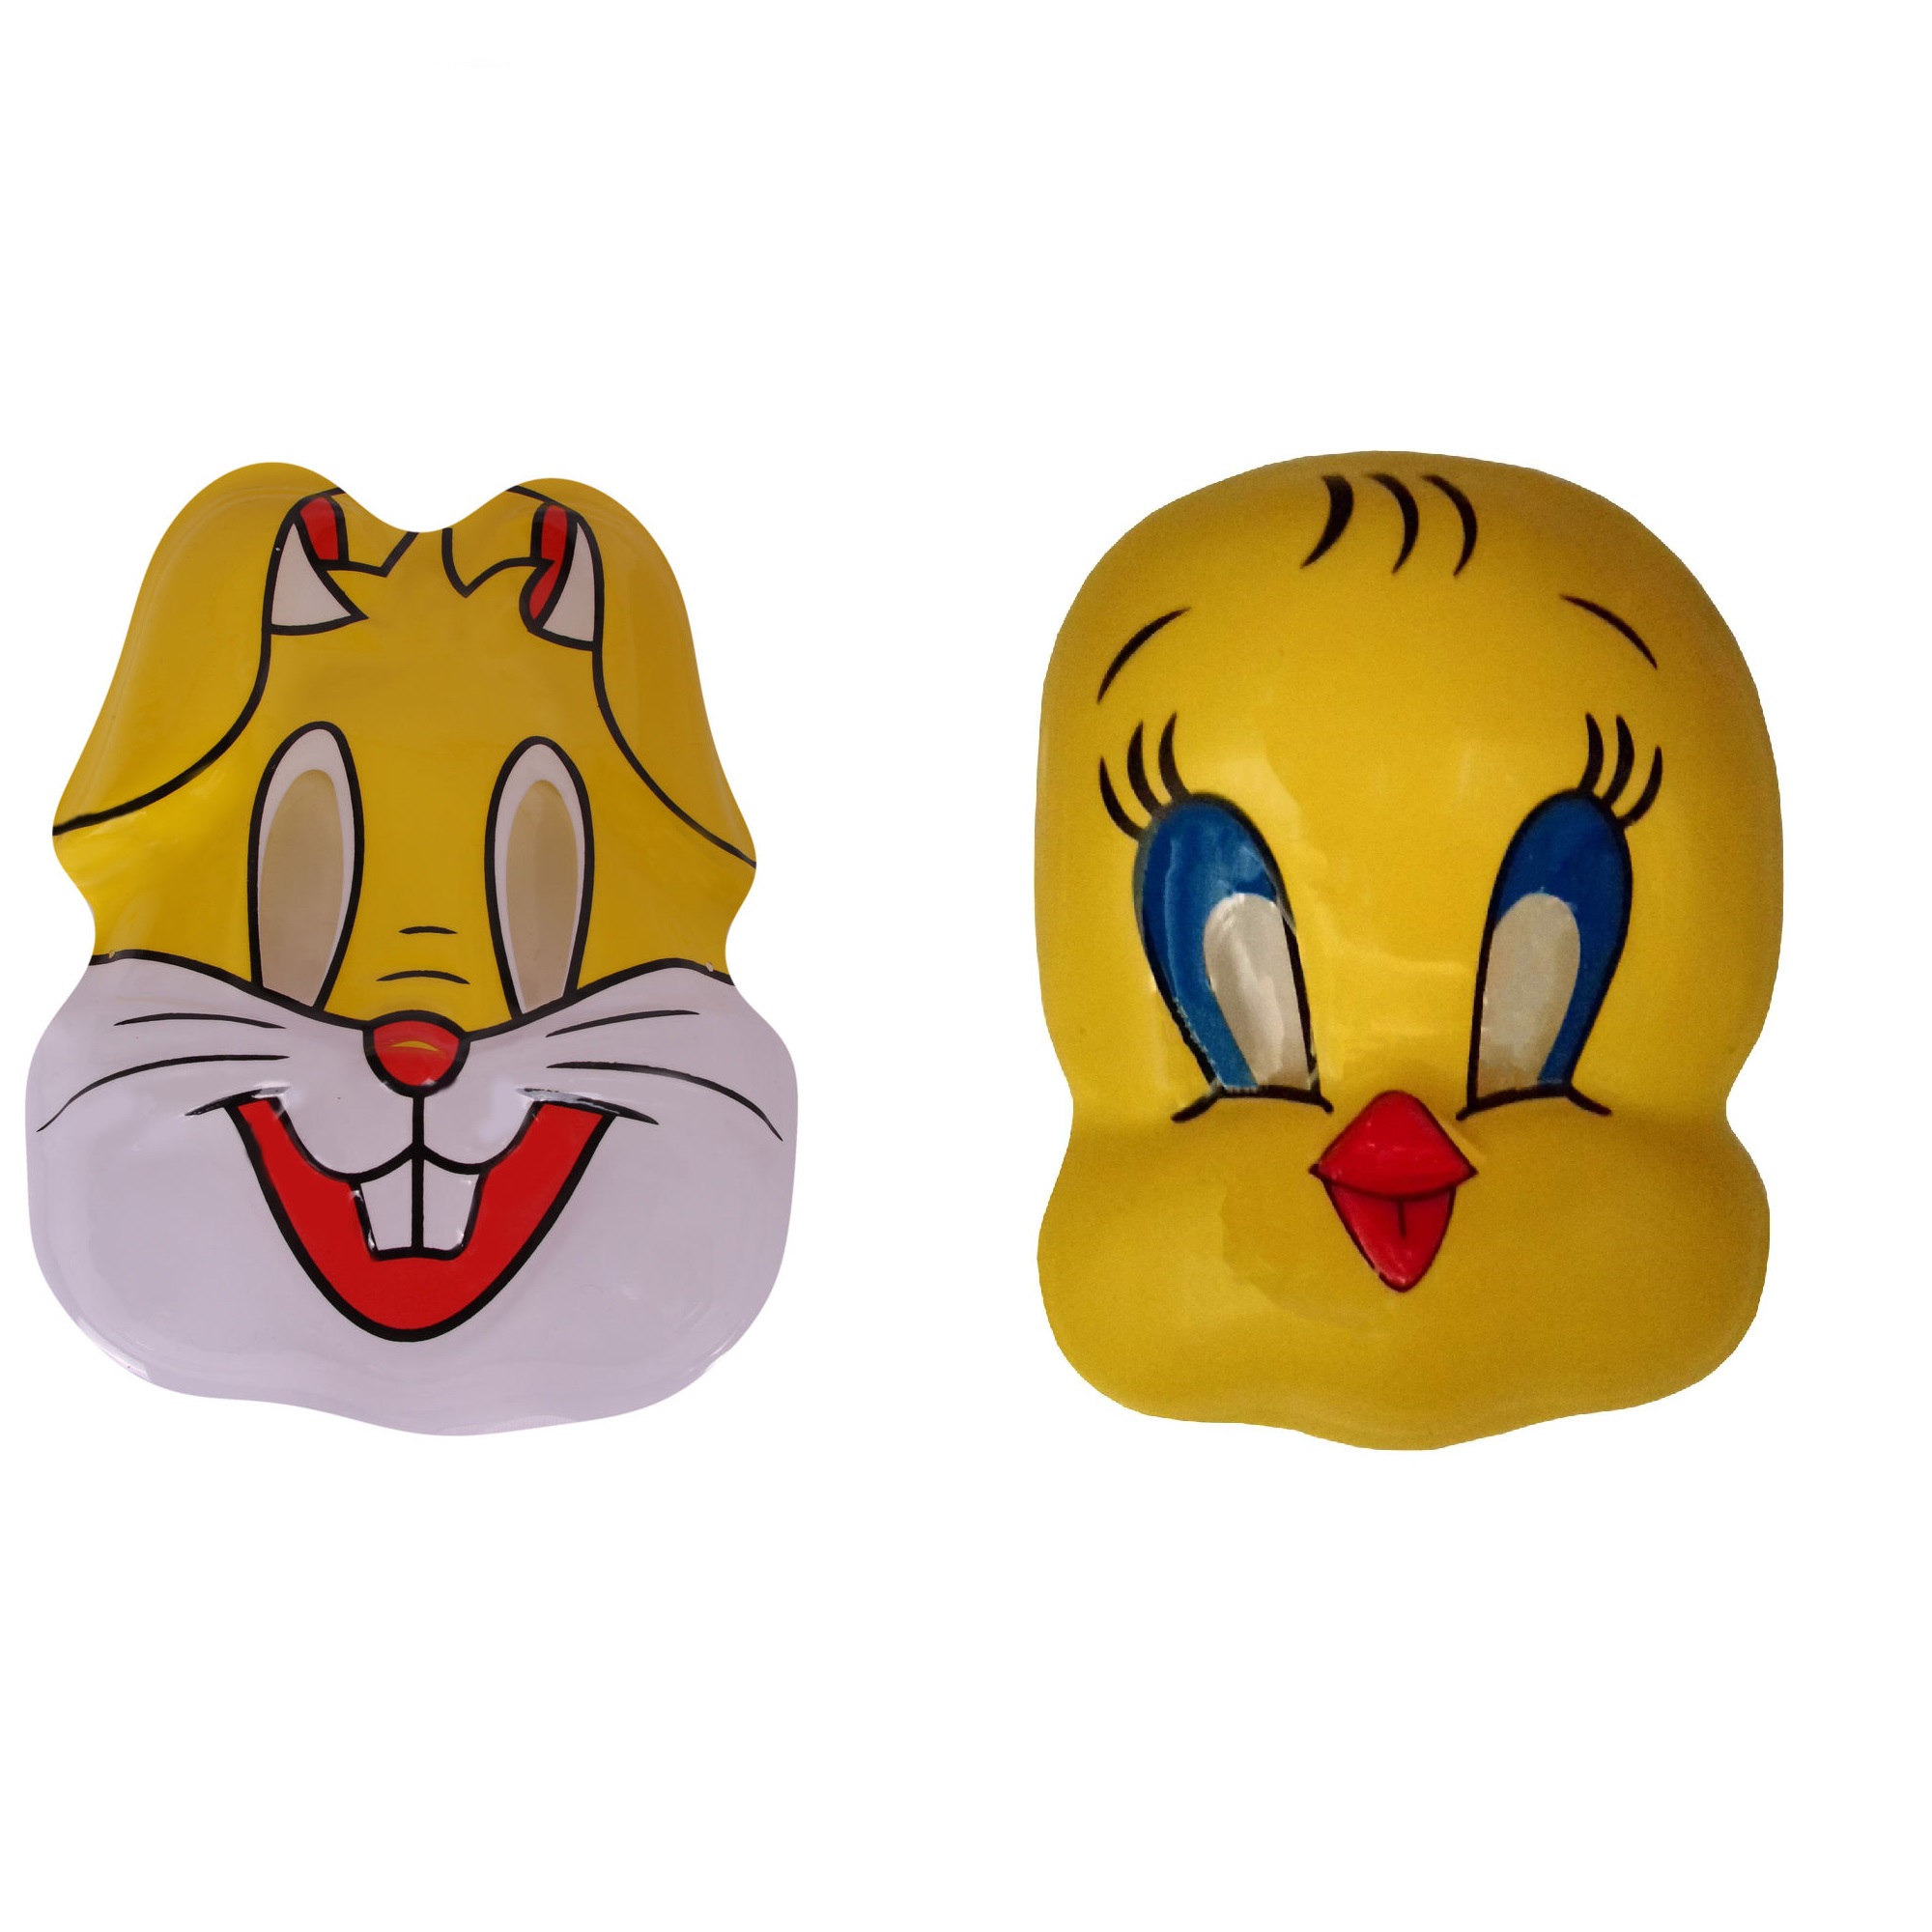 ماسک کودک مدل توییتی و خرگوش مجموعه 2 عددی 